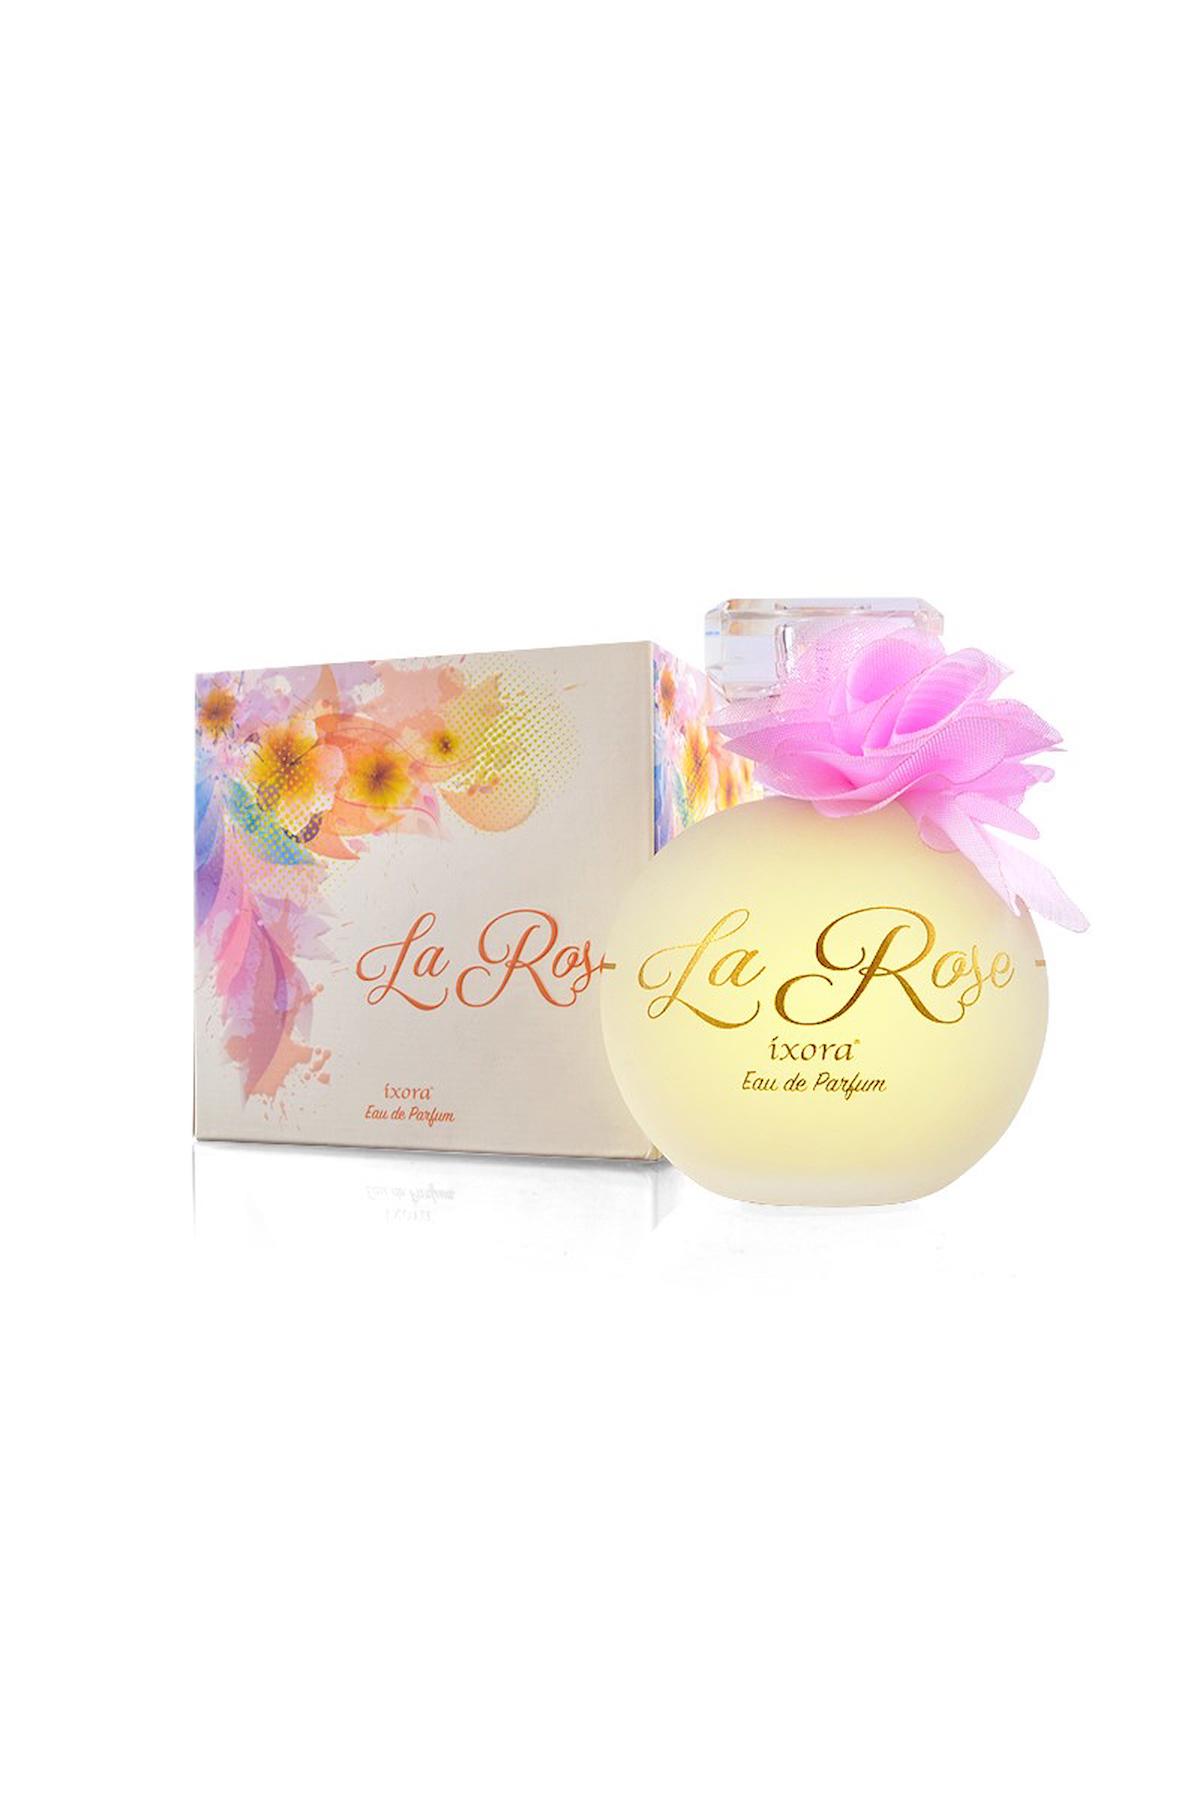 İxora Mystical Garden La Rose EDP Meyvemsi Kadın Parfüm 100 ml